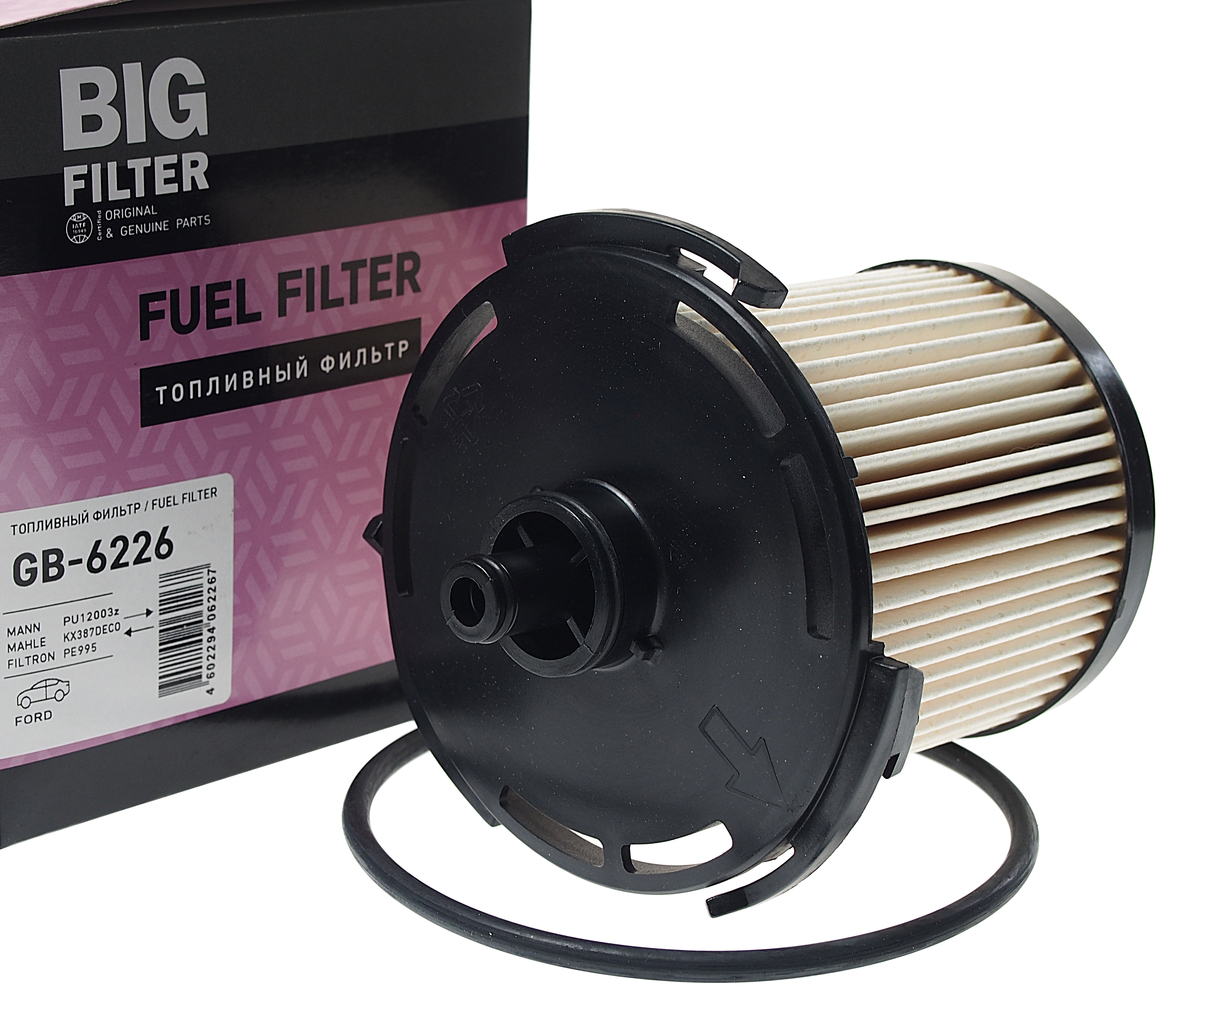 Фильтр топливный FORD Mondeo (07-) (2.0 D), GB-6226, BIG FILTER